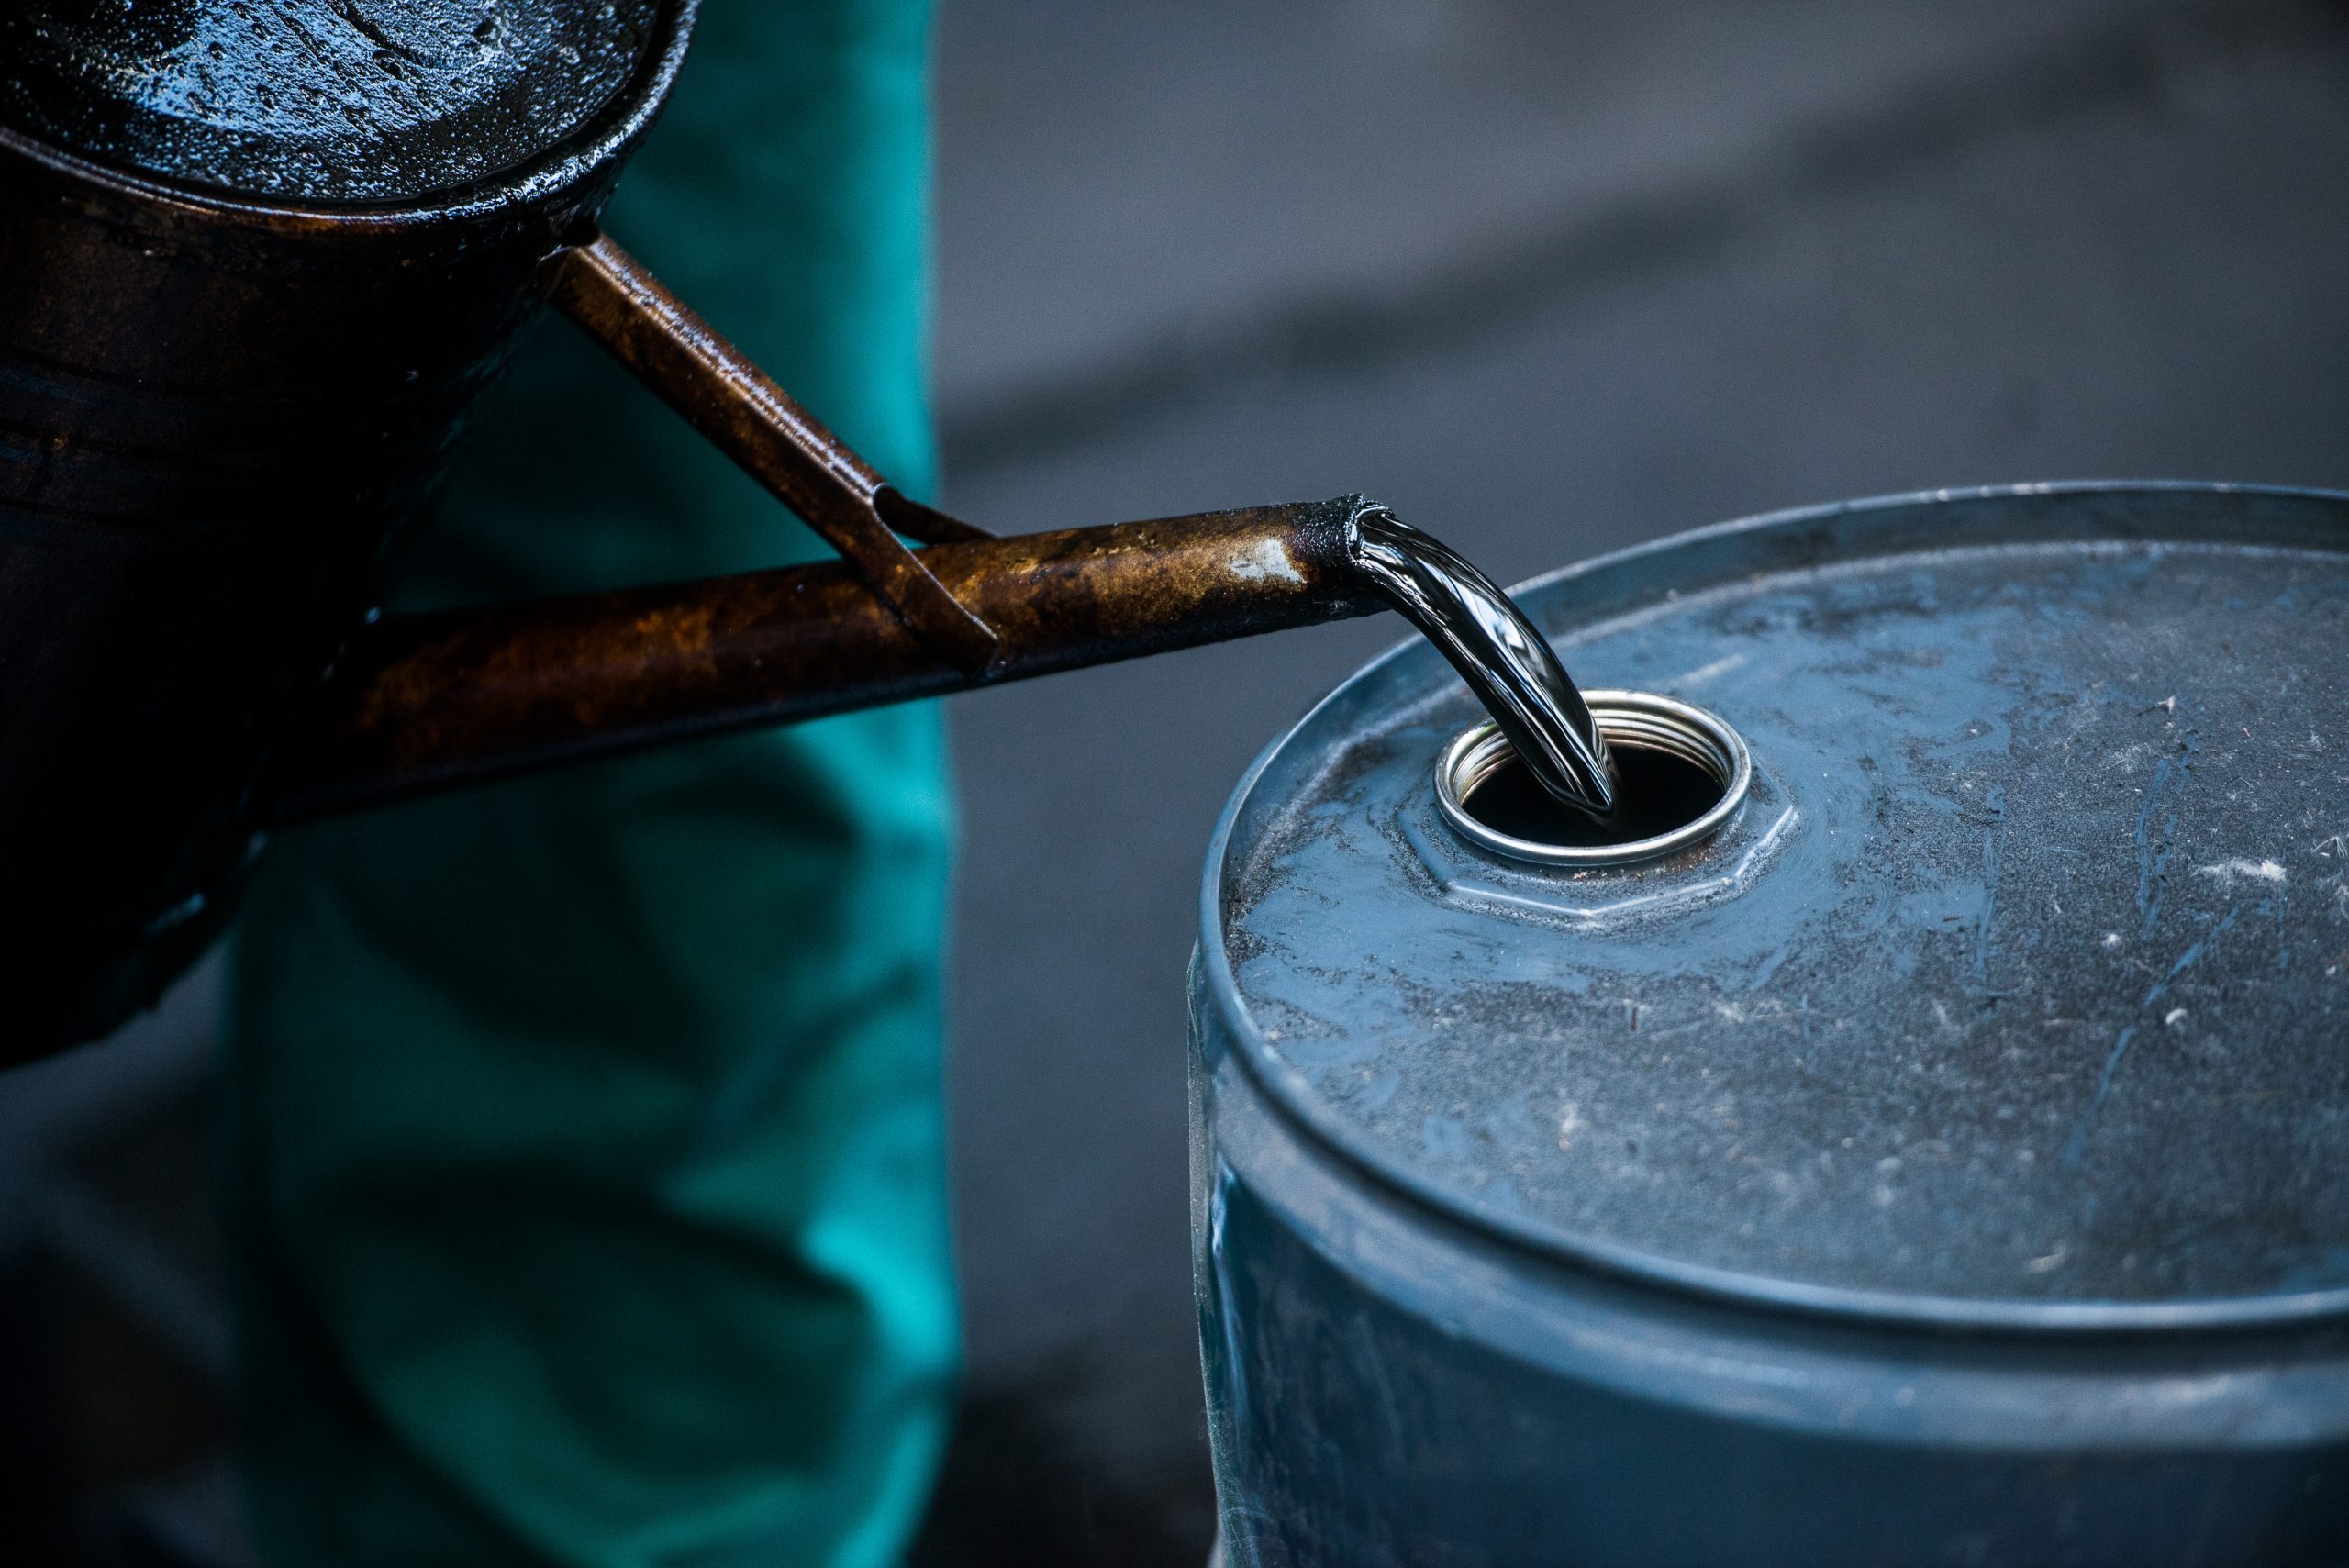 نفت کوره چیست و چه کاربردهایی دارد؟